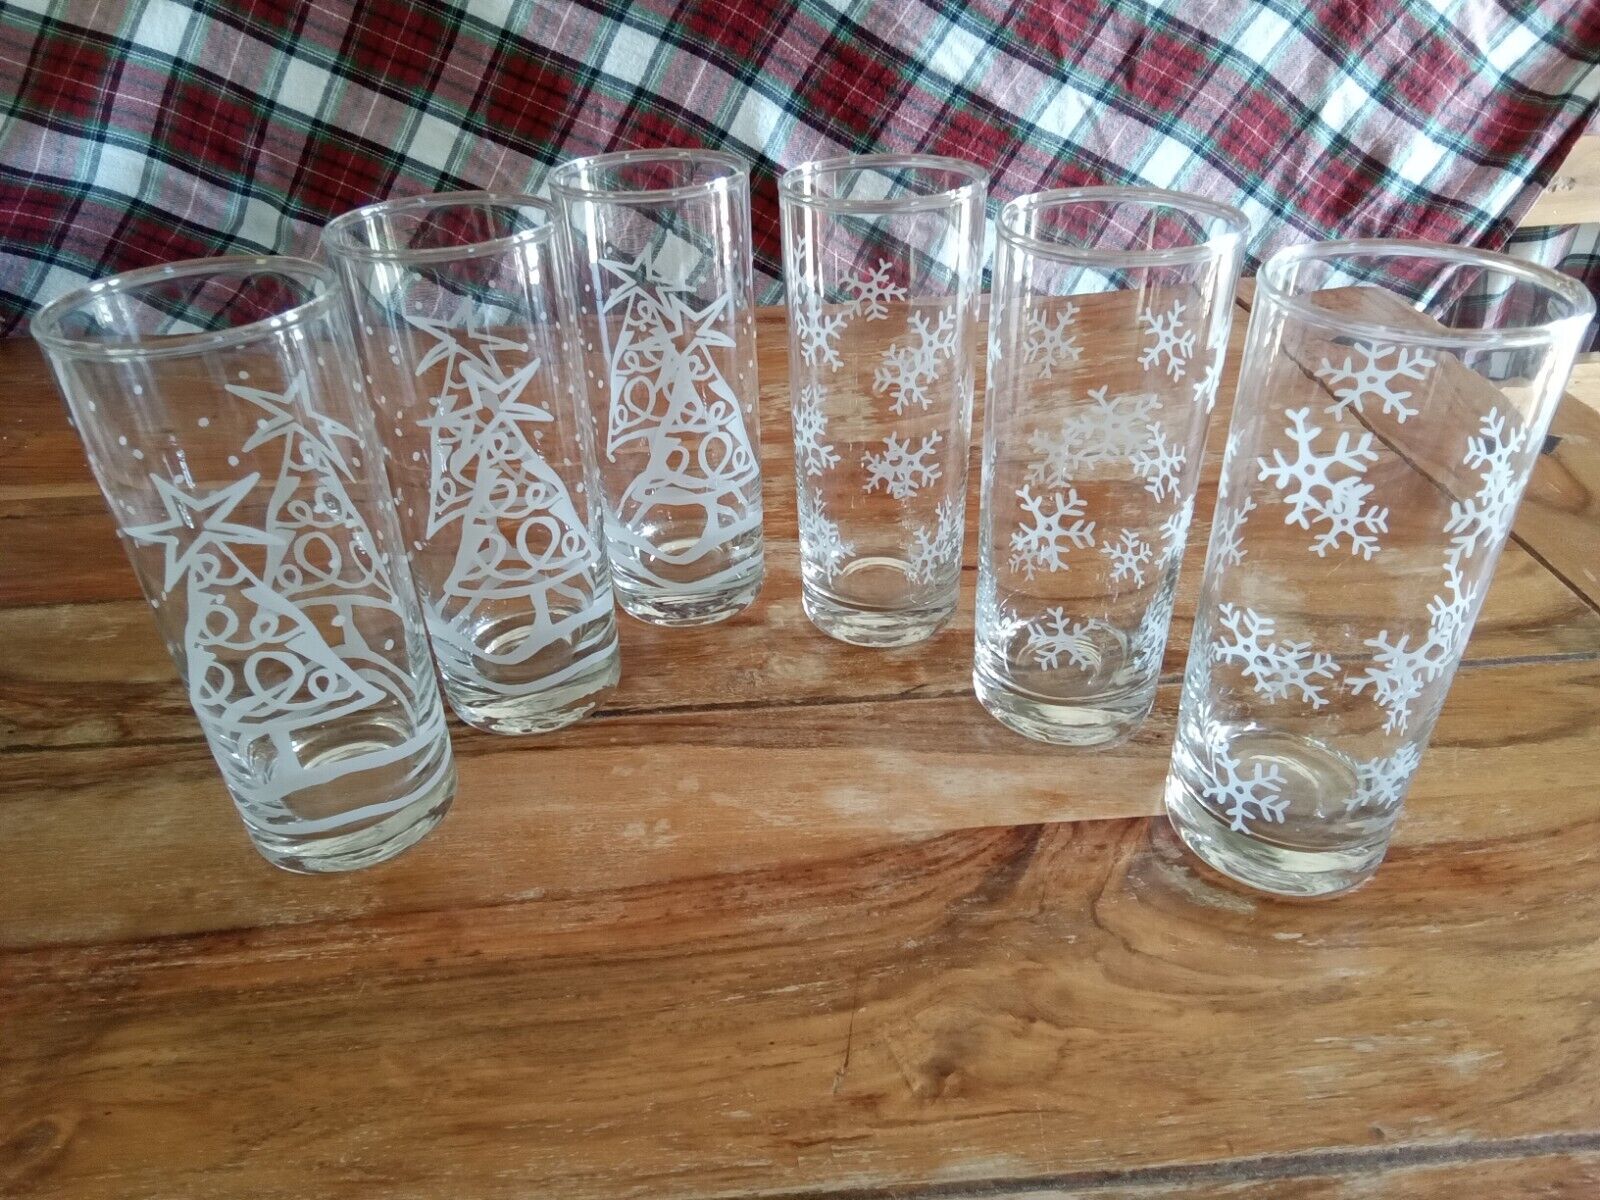 6 TALL CHRISTMAS GLASSES, 3 W/SNOWFLAKES,3 W/CHRISTMAS TREES